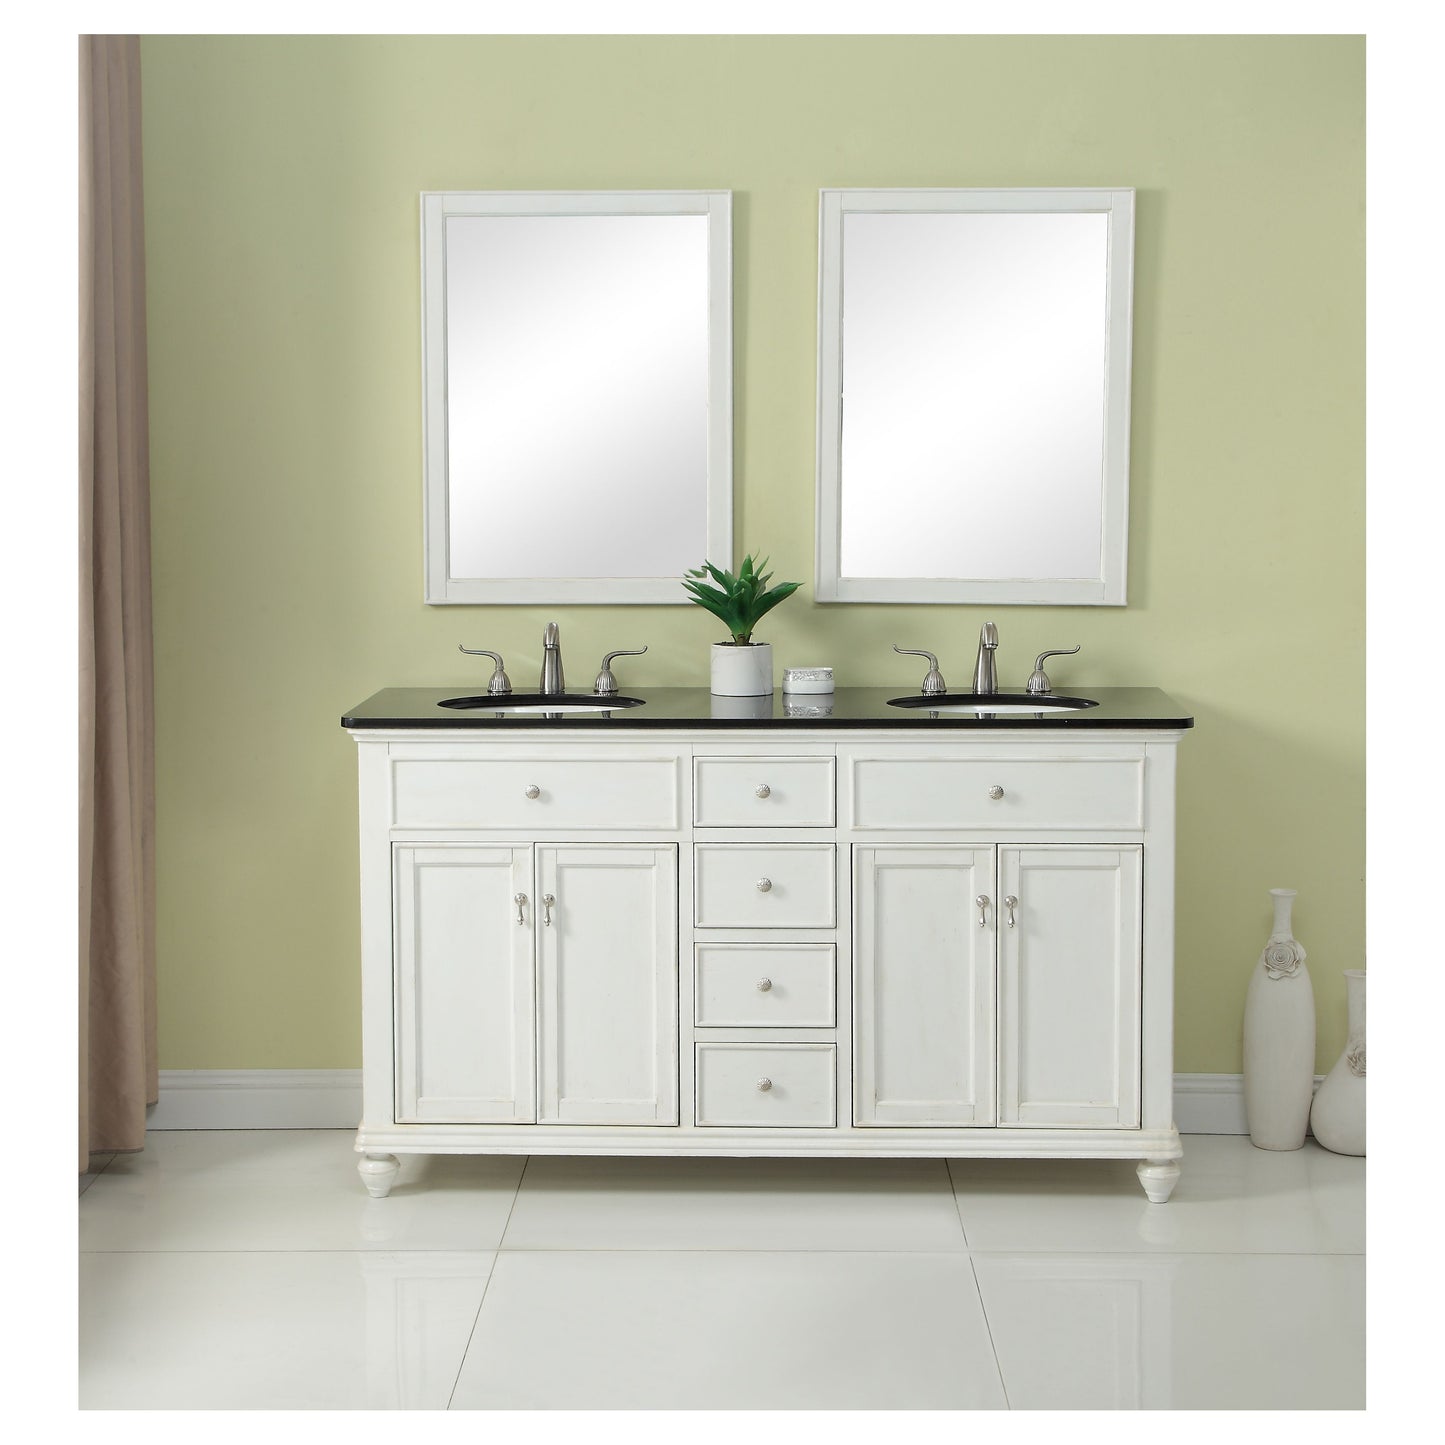 VF12360DAW 60" Double Bathroom Vanity Set in Antique White